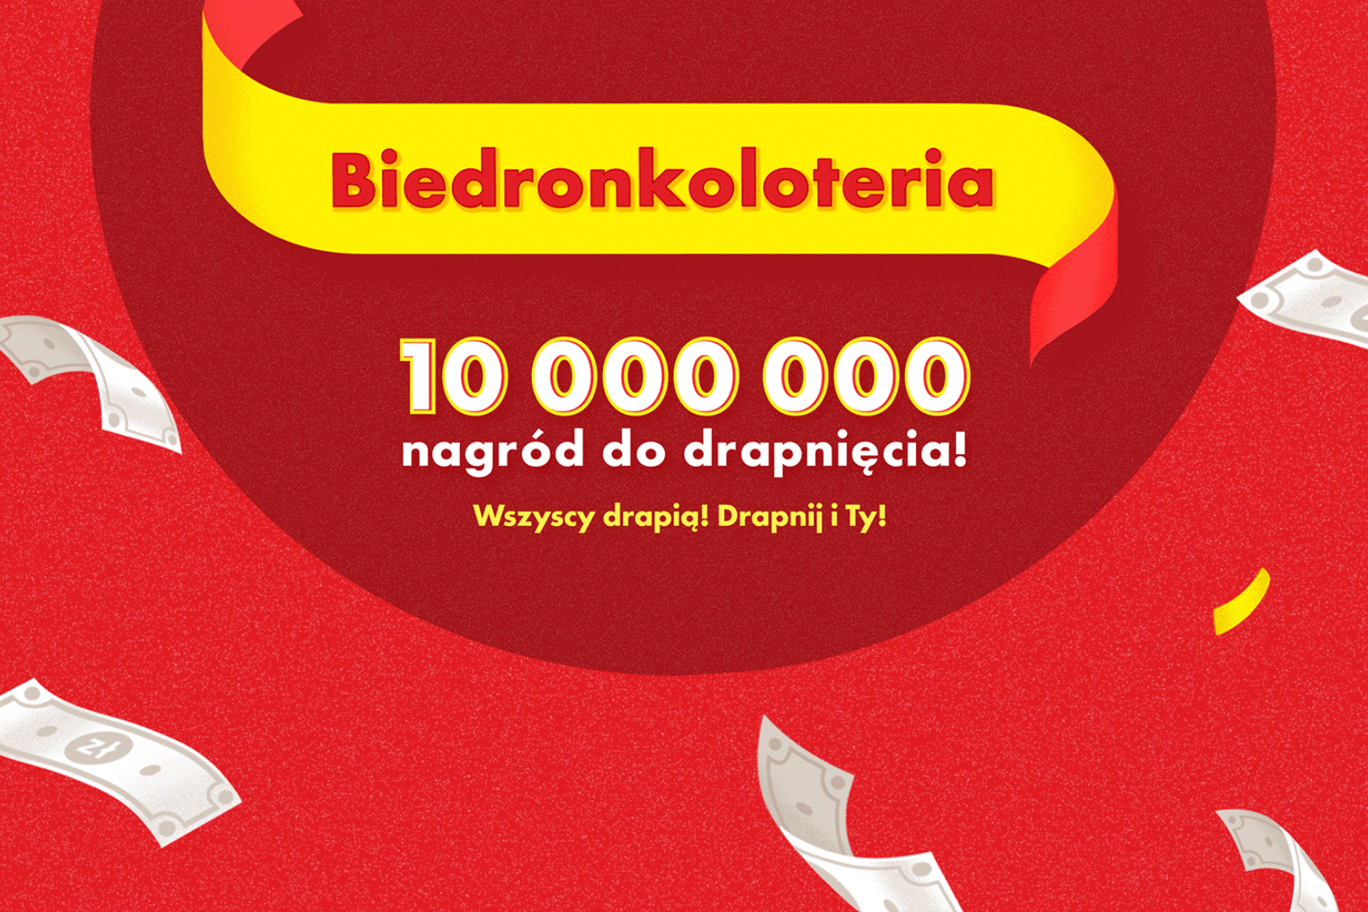 Biedronkoloteria – 10 milionów nagród do zgarnięcia!